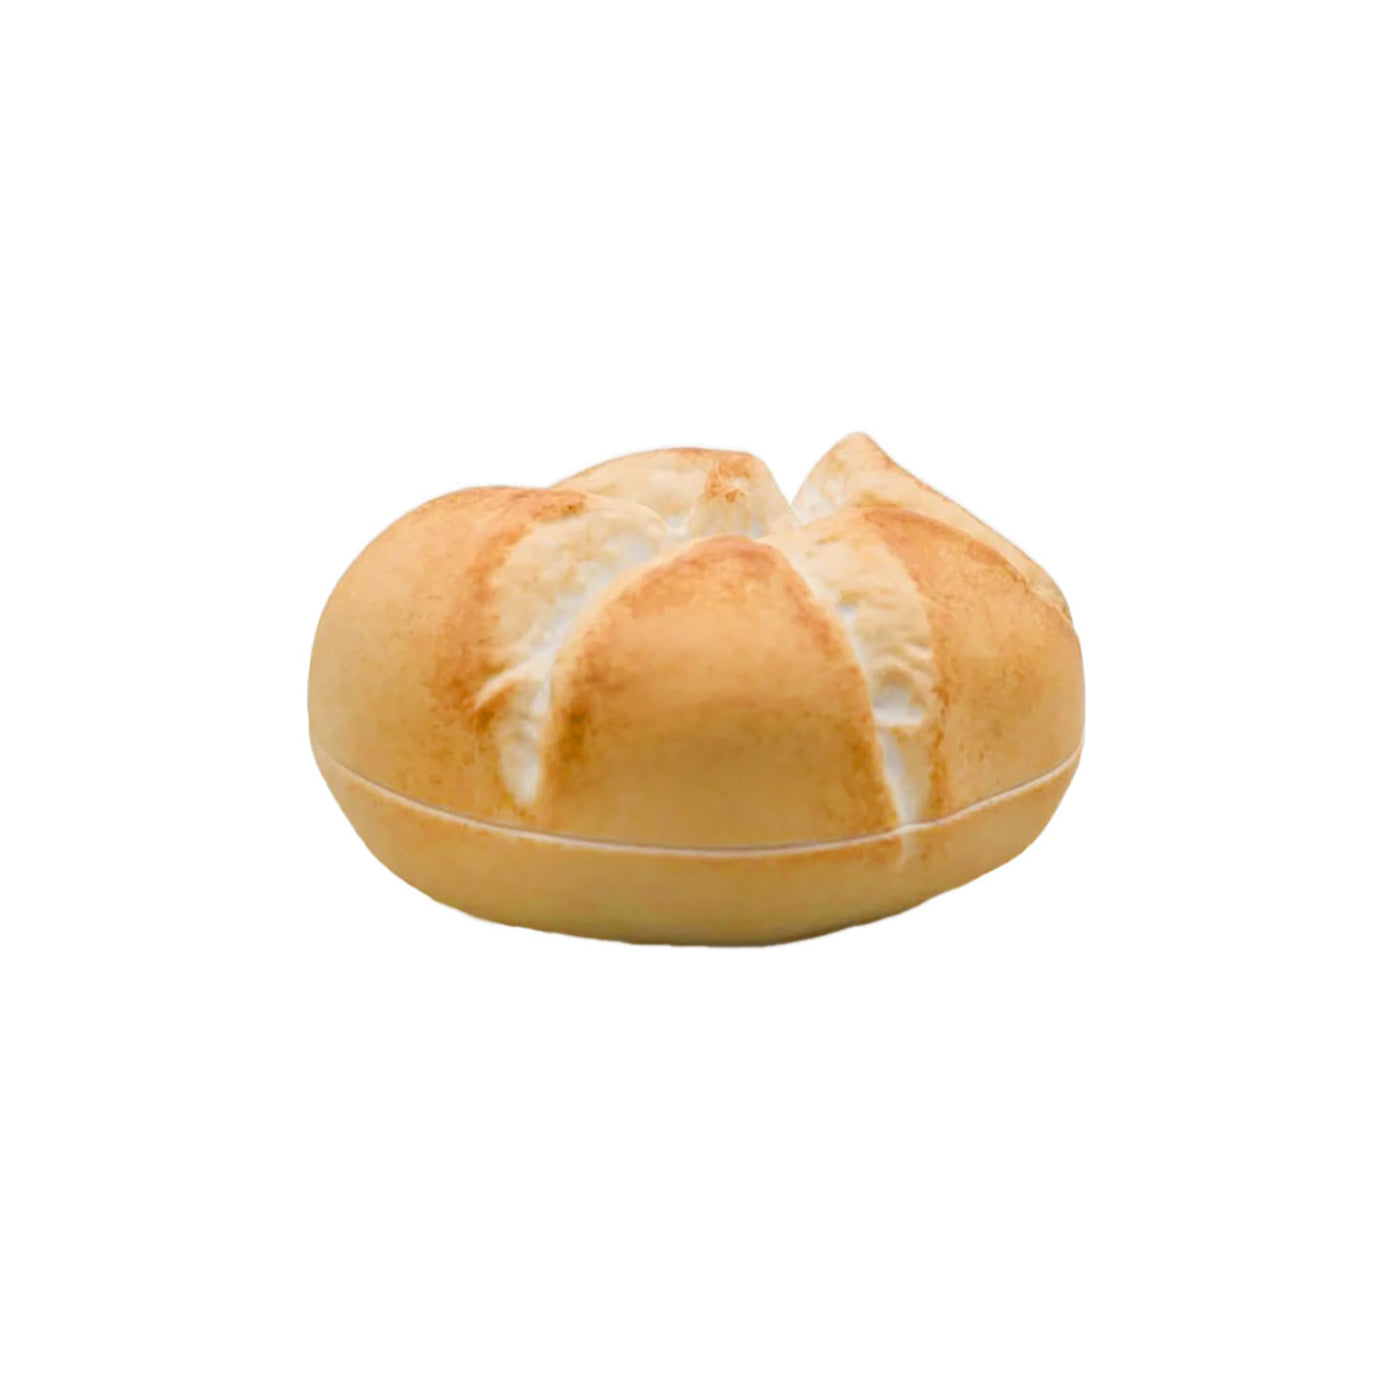 Bread Roll Box